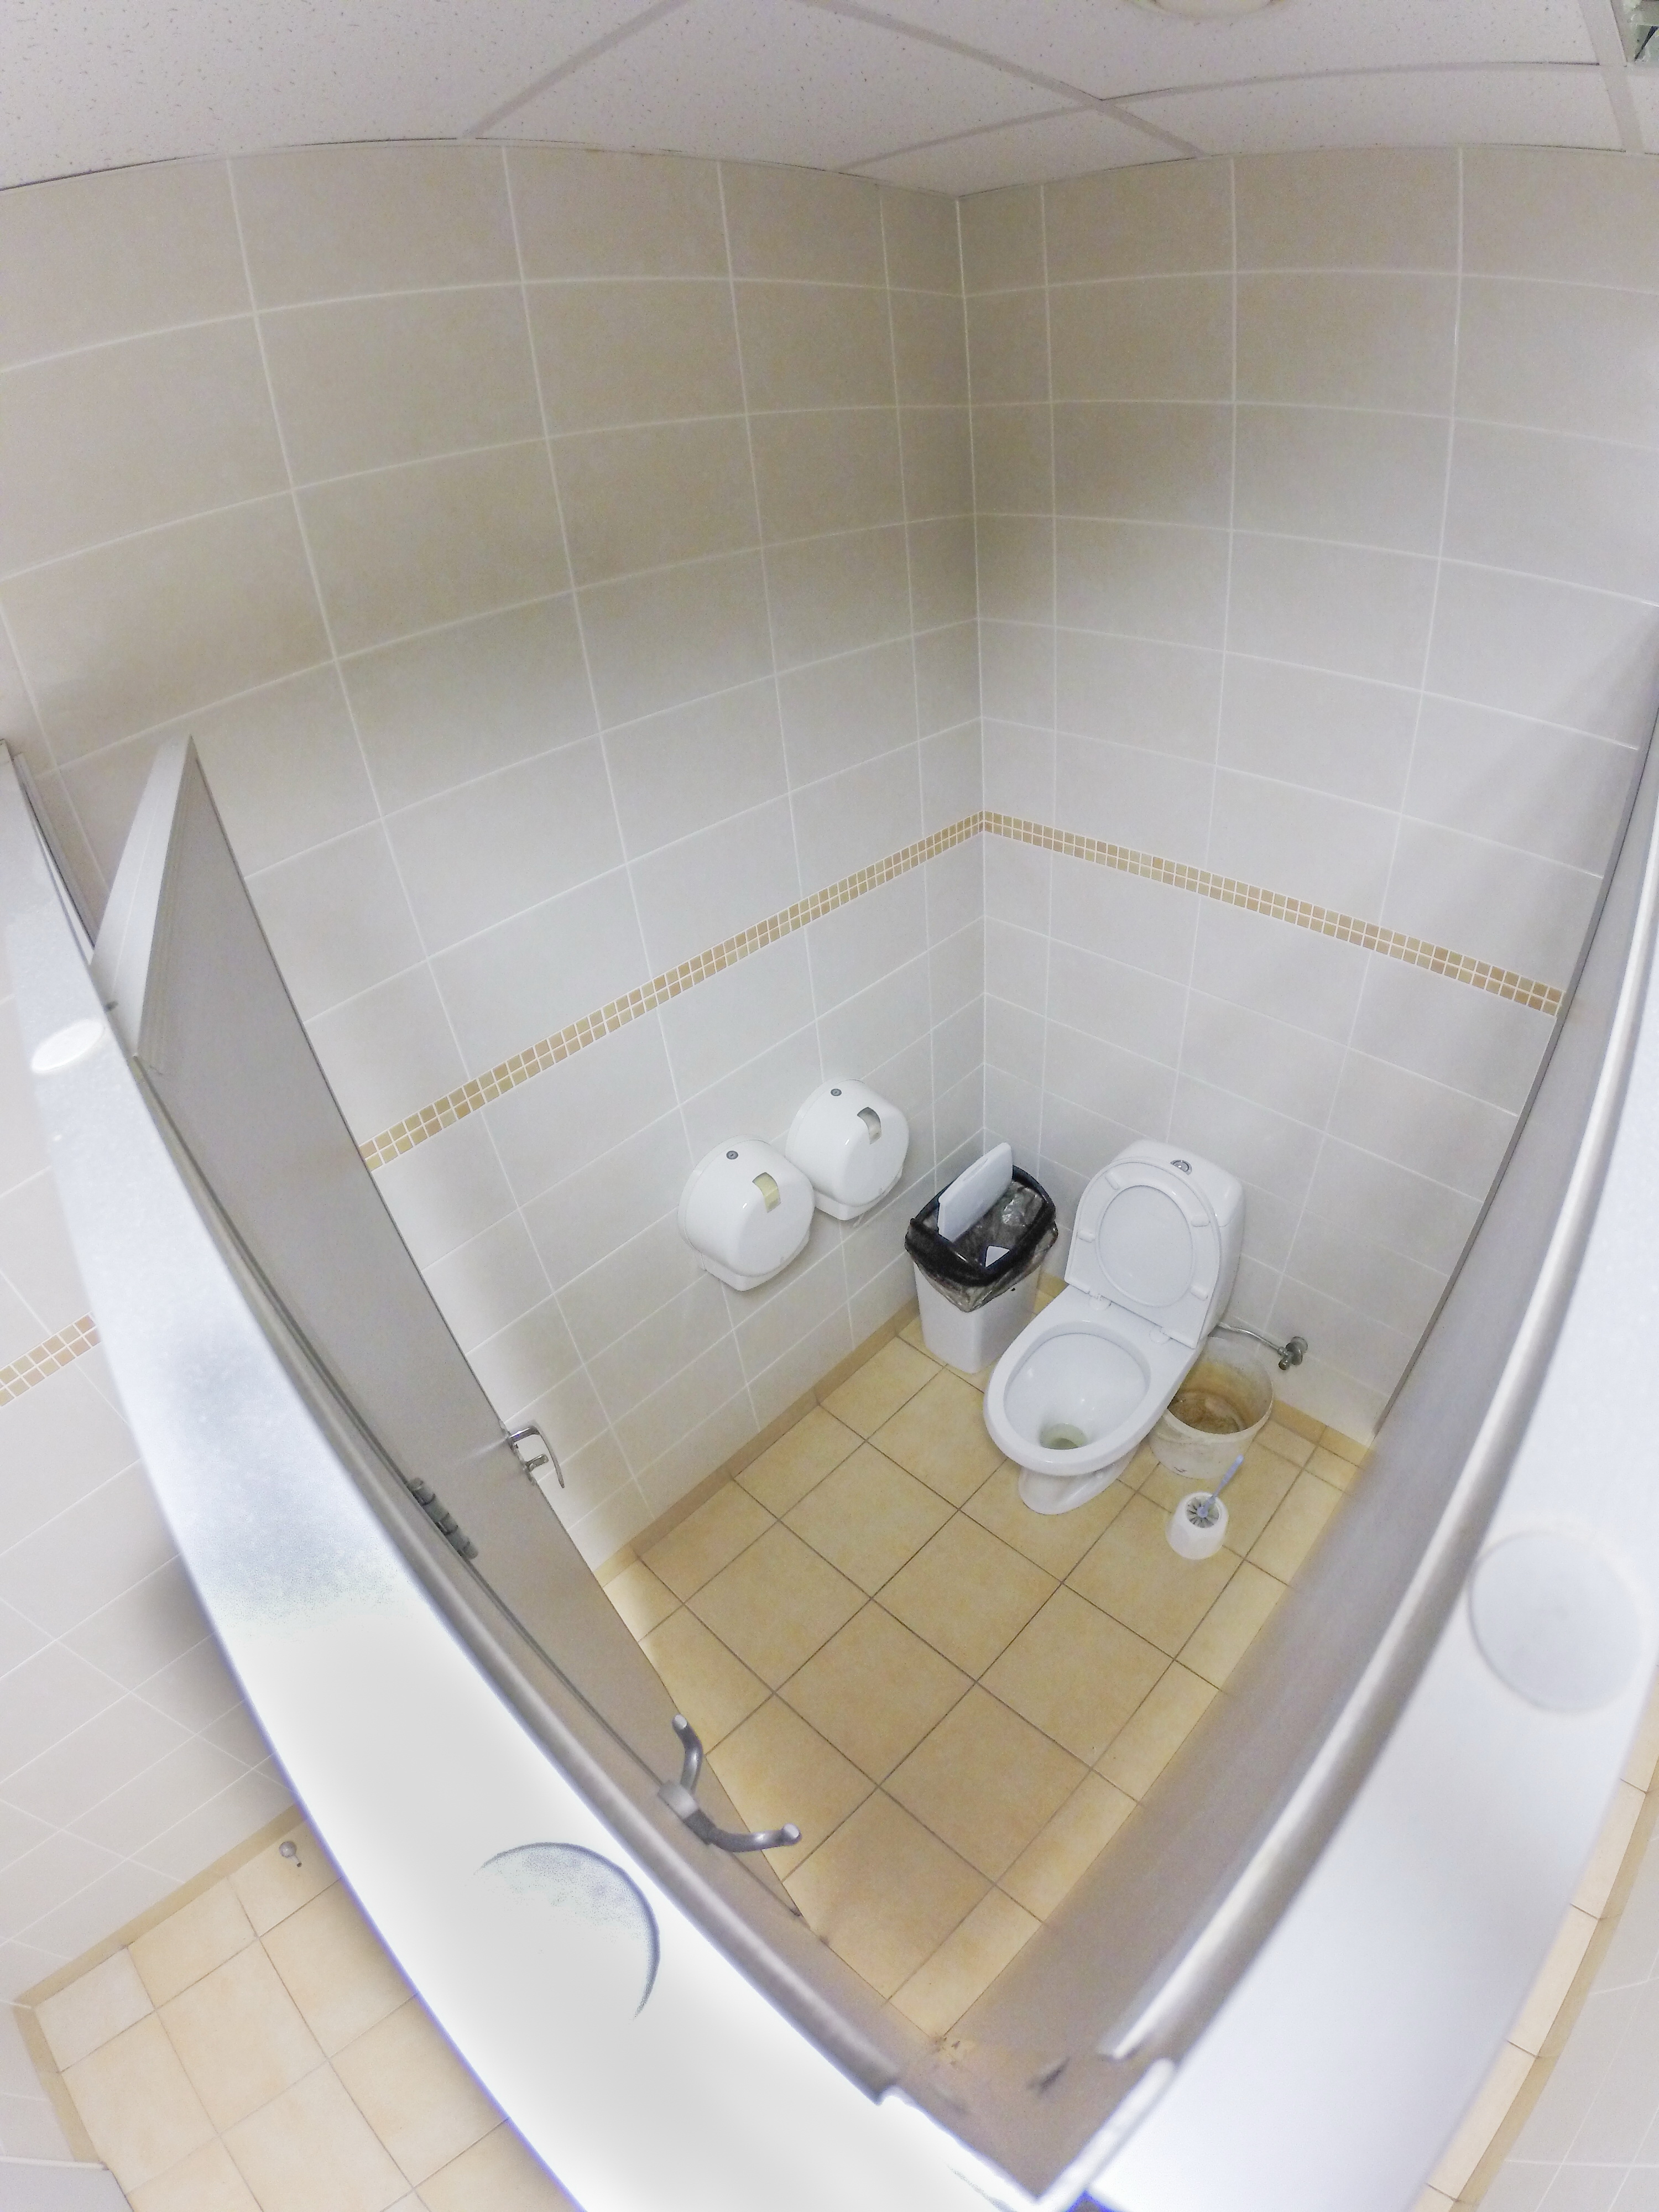 Durva: rejtett kamerát találtak a rendőrség női zuhanyzójában - Blikk